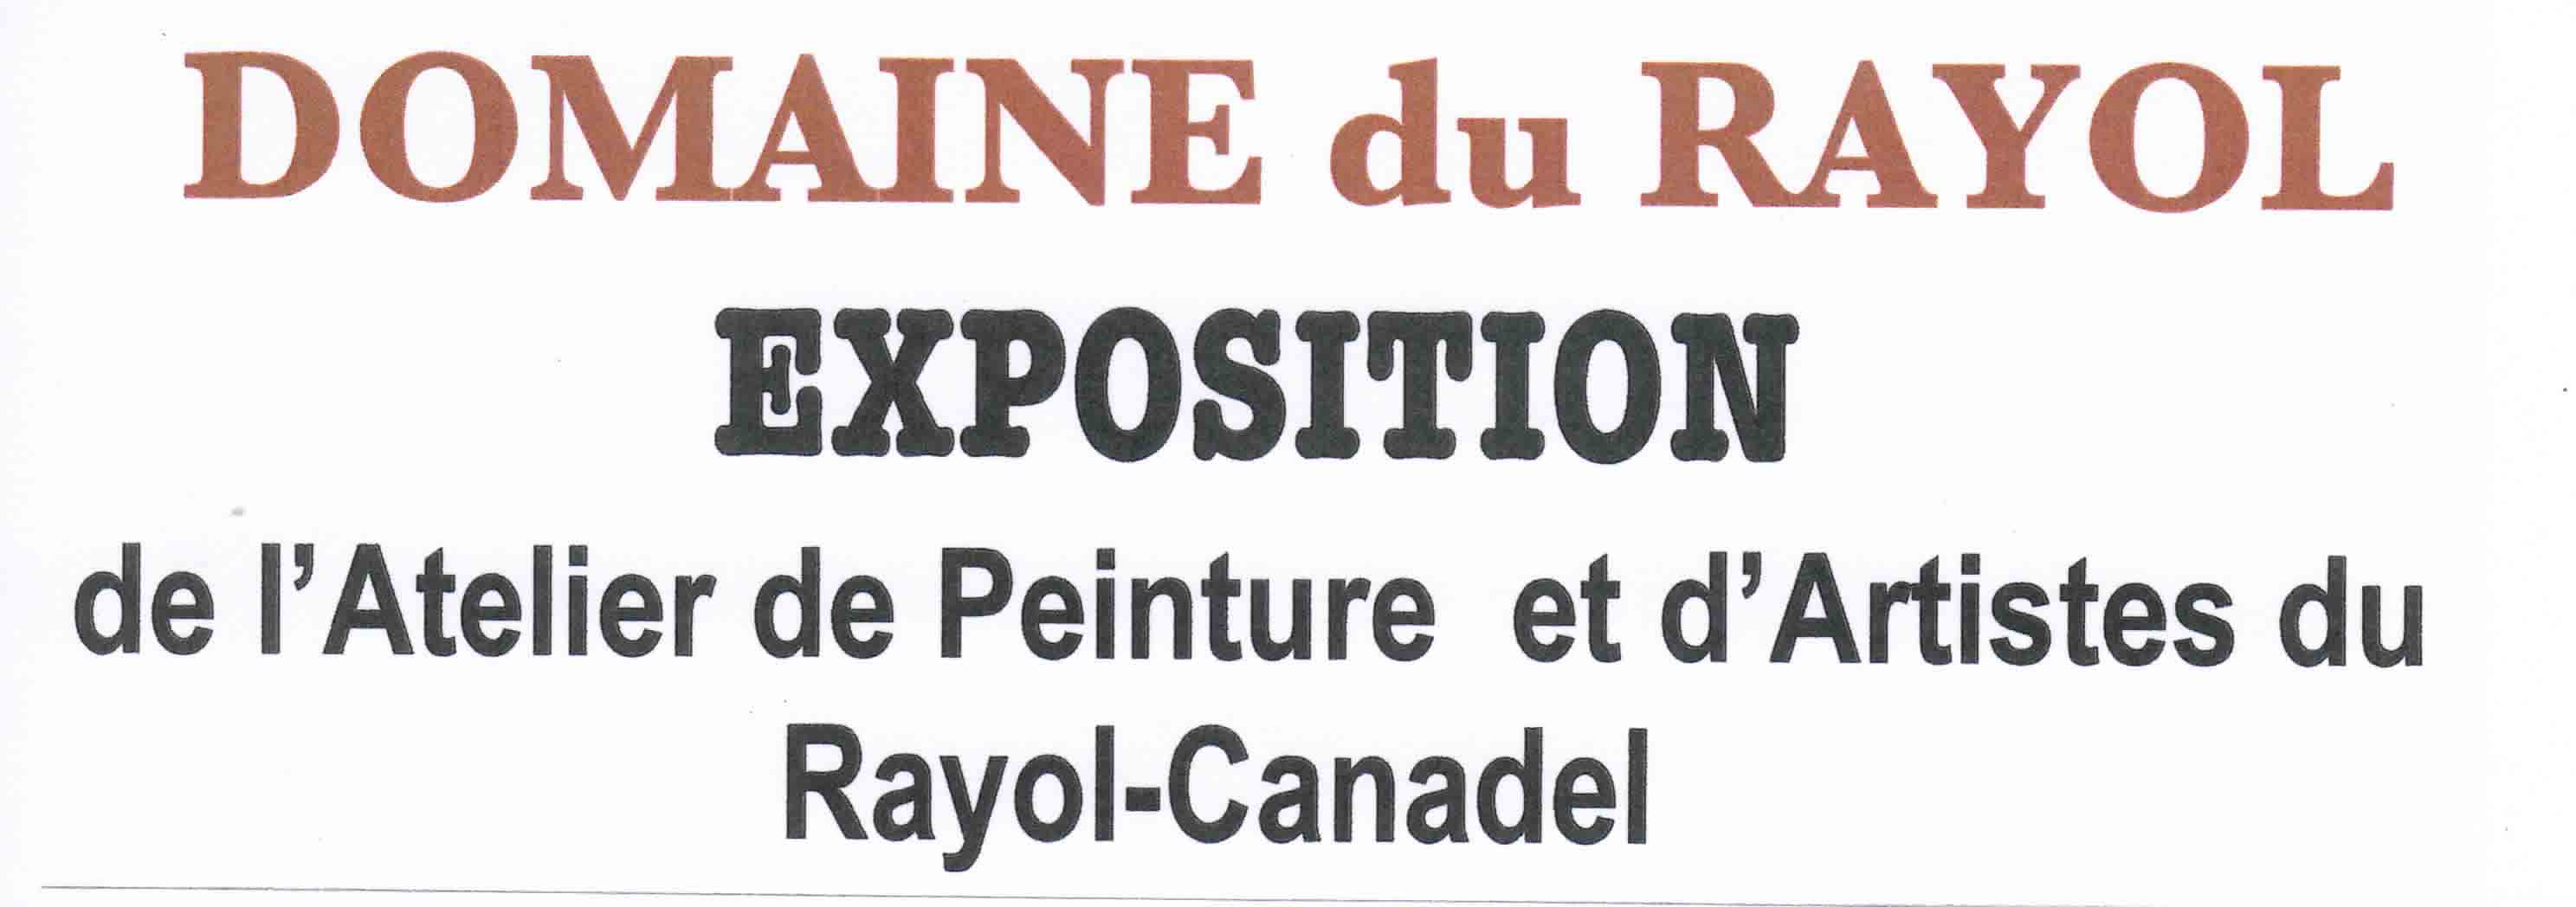 Exposition de l’Atelier de peinture et d’Artistes du Rayol-Canadel